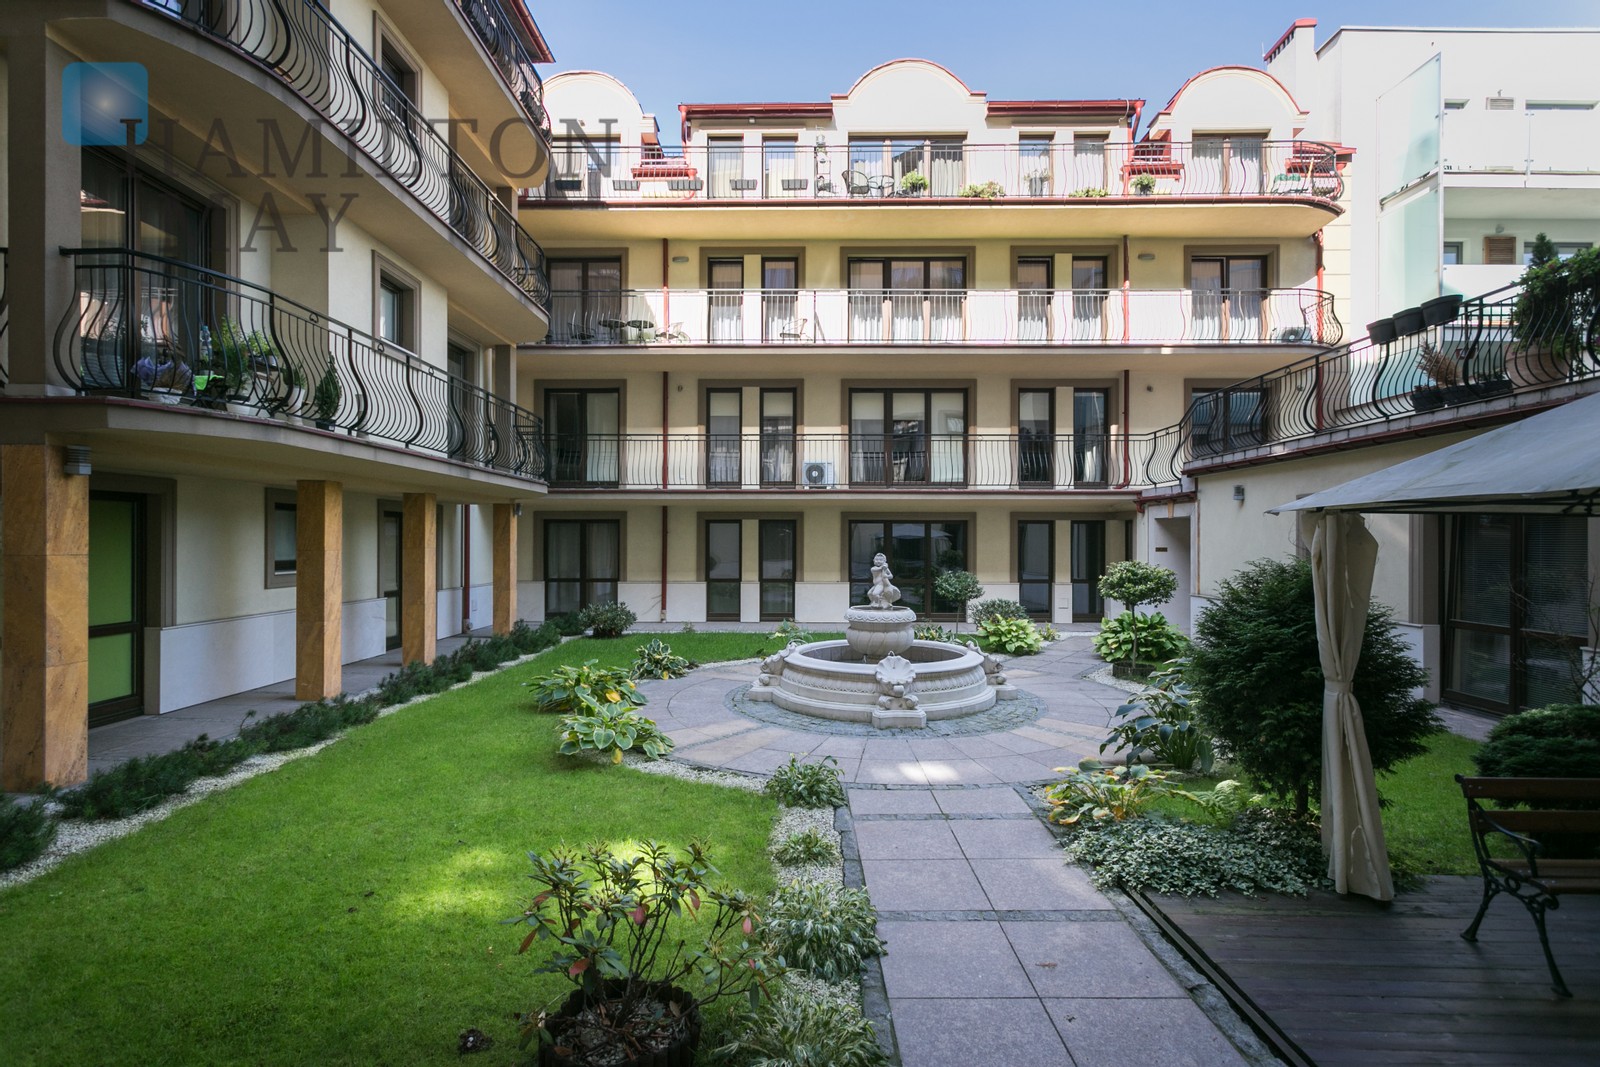 Kazimierz Paradise - 2-pokojowe mieszkanie w nowoczesnej inwestycji w sercu dzielnicy Kazimierz Kraków na wynajem